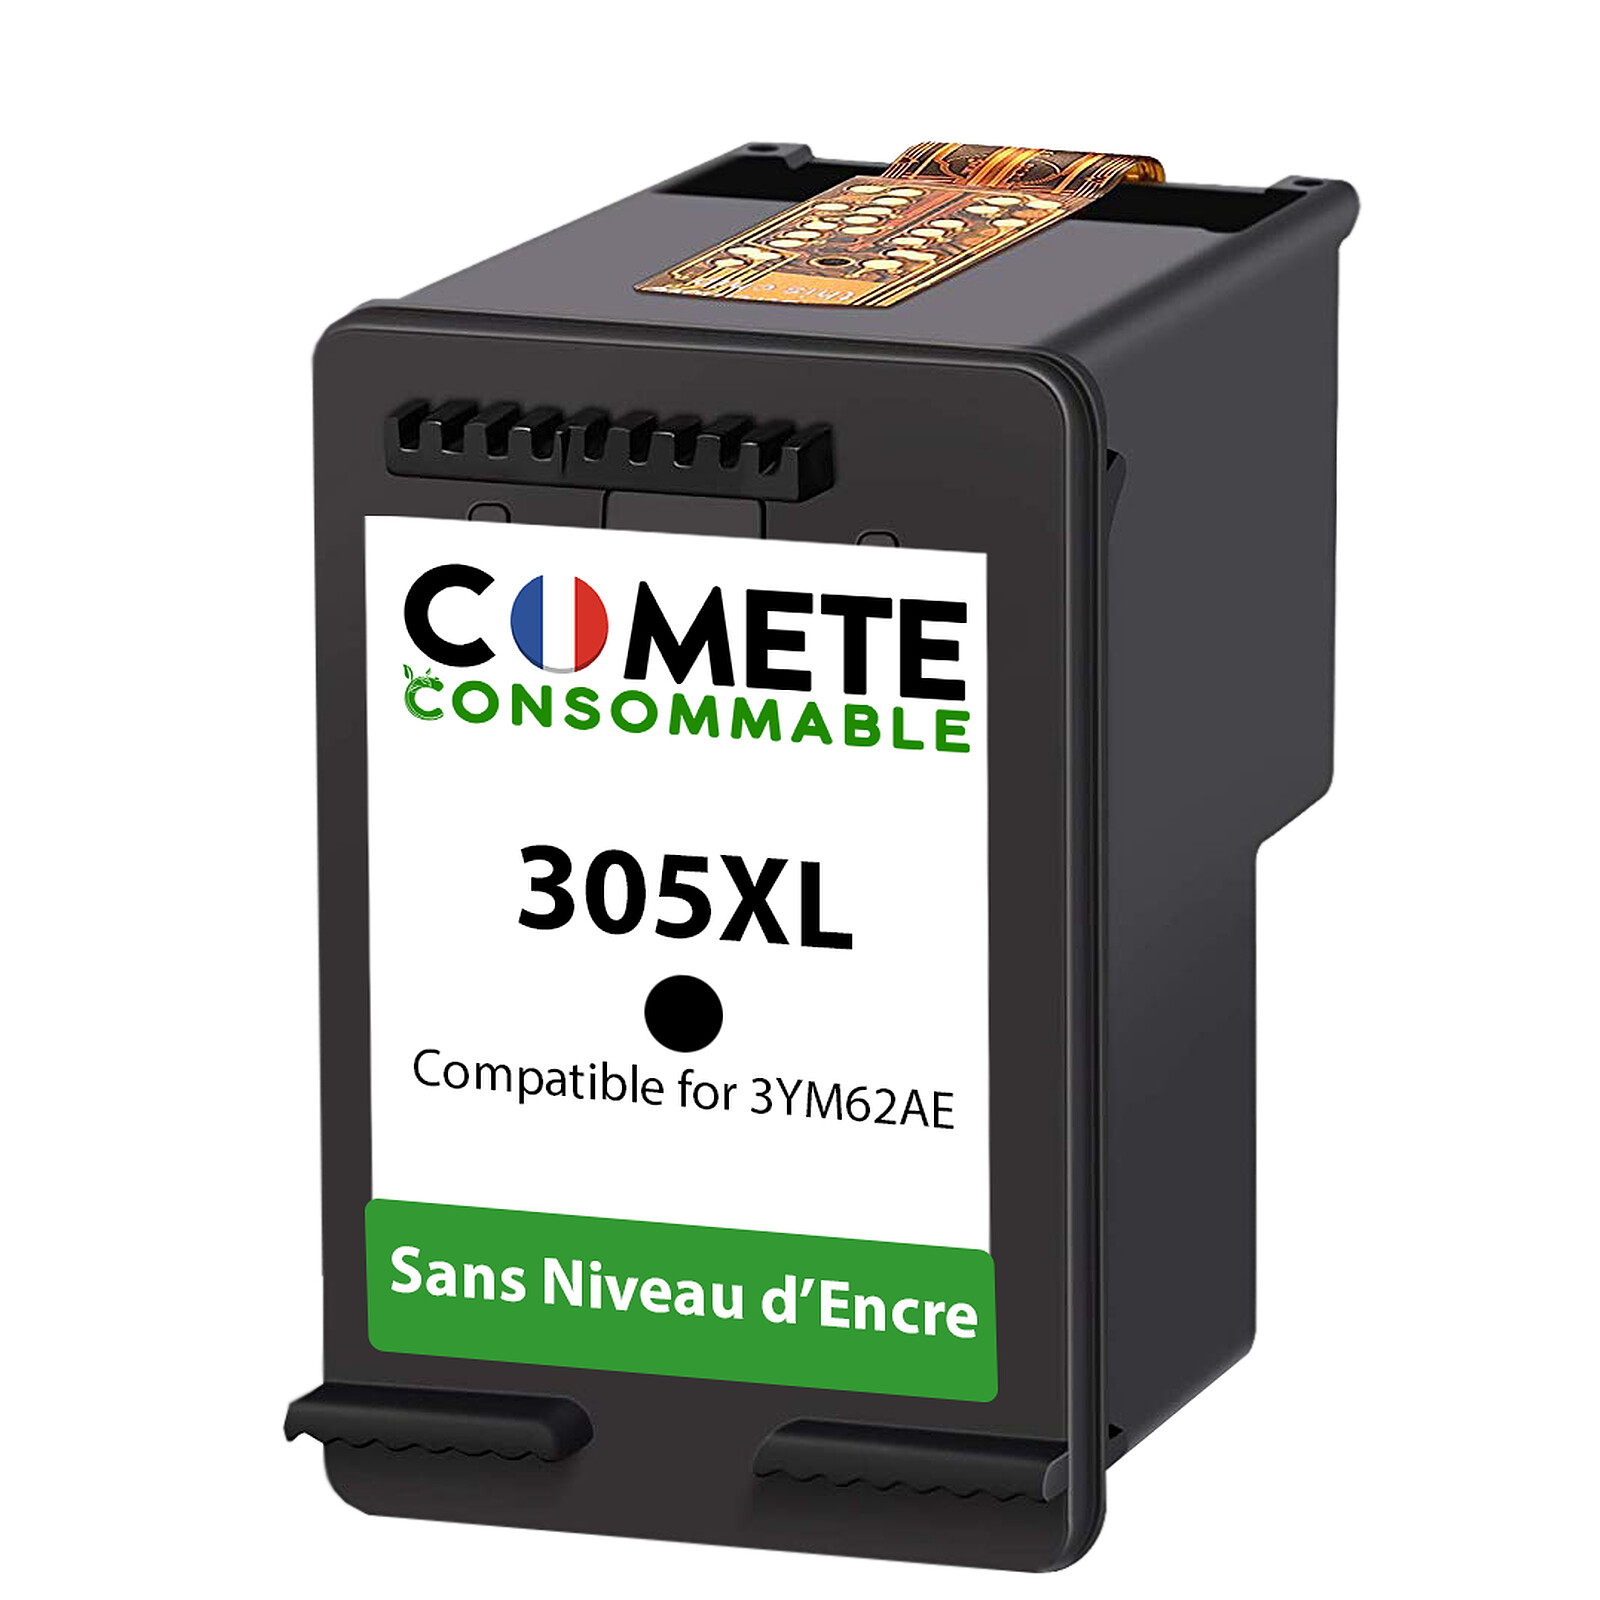 COMETE - 305XL - 2 cartouches compatibles HP 305 XL Sans Niveau d'encre -  Marque française - Cartouche imprimante - LDLC